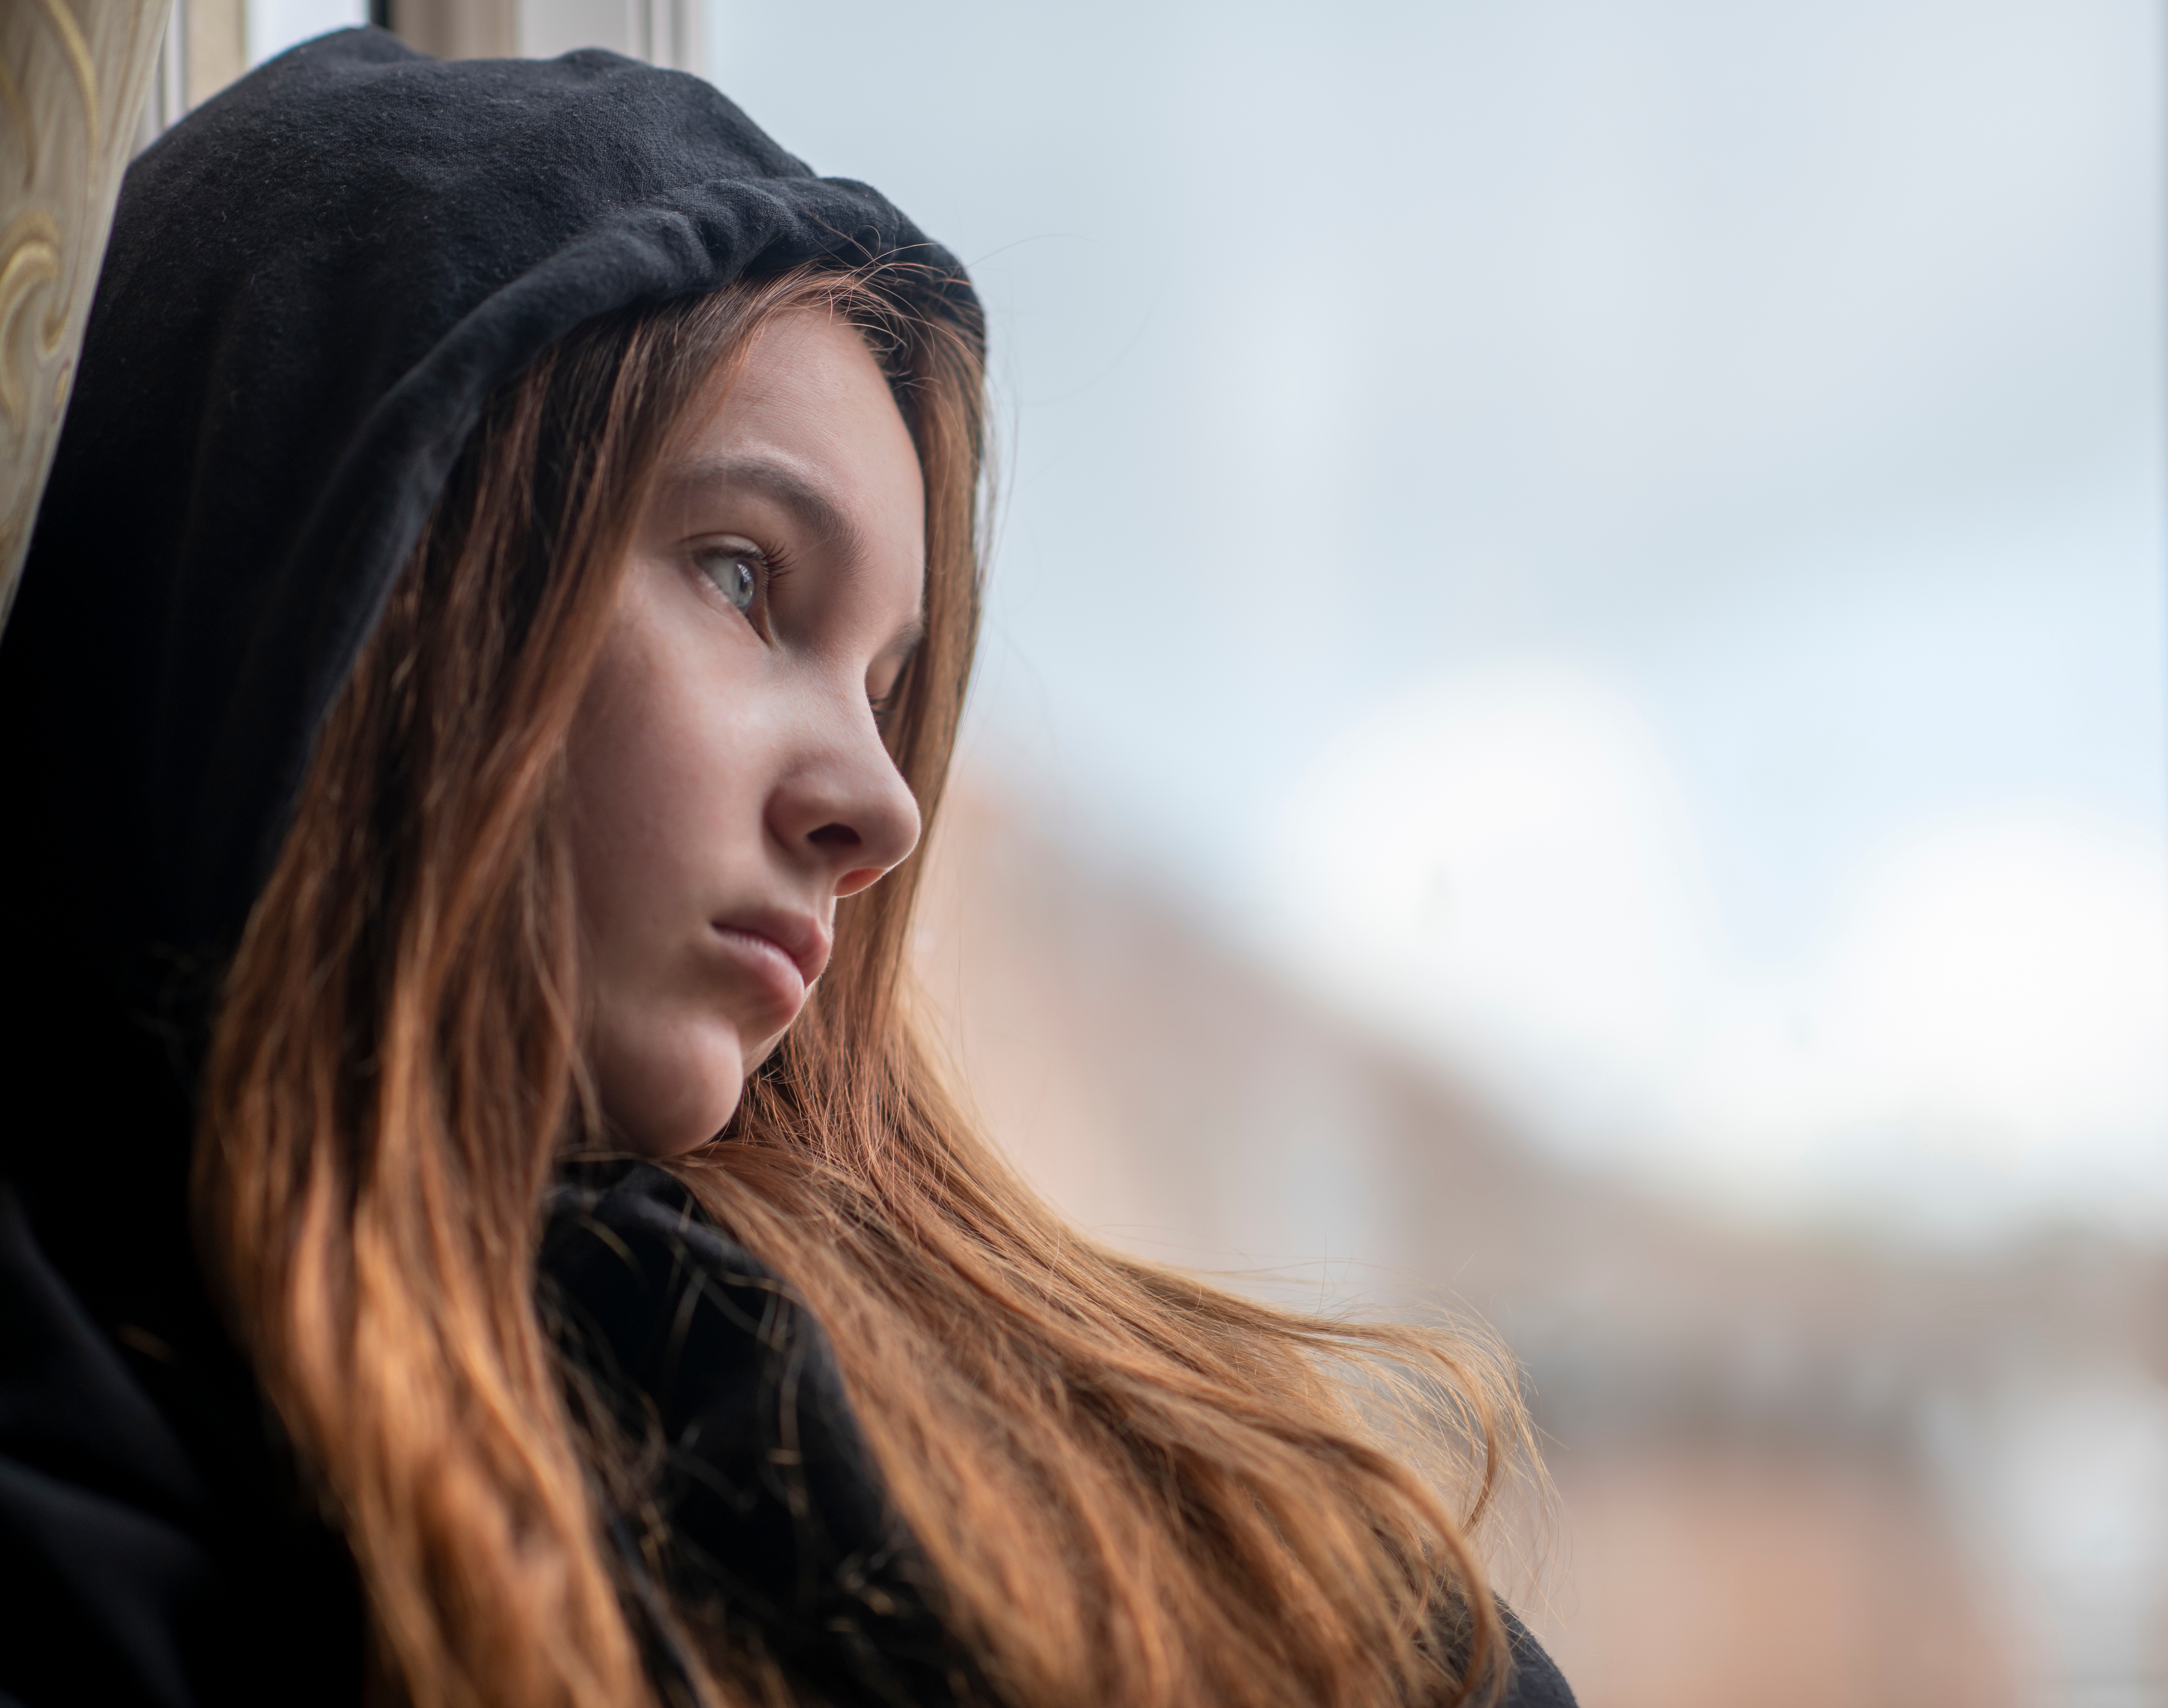 Une adolescente triste debout près d'une fenêtre | Source : Shutterstock